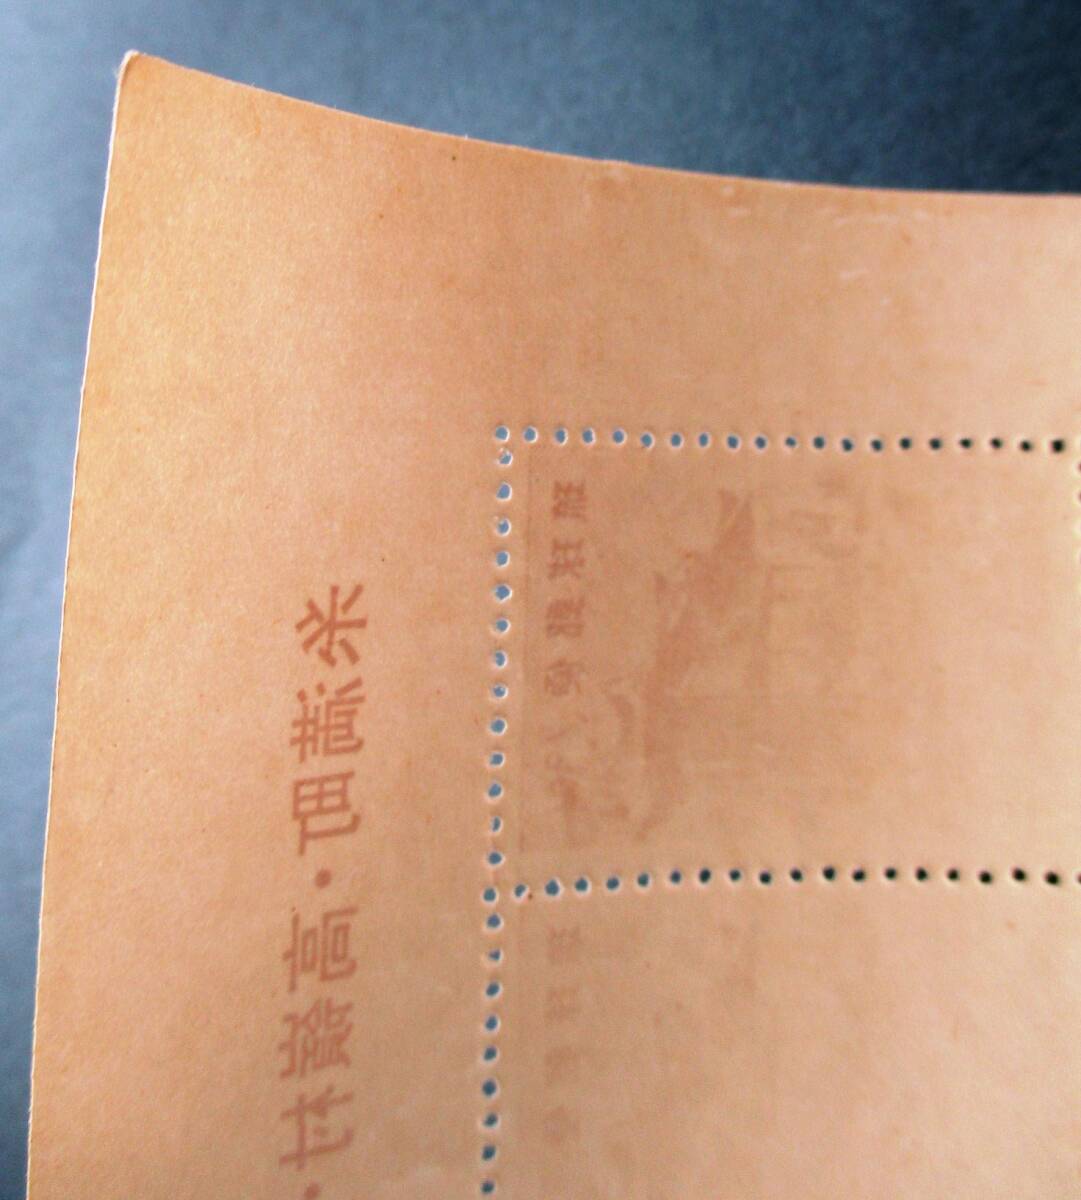 沖縄切手・琉球切手 希少品 中丸印刷所謹製 町村合併記念 20面シート R41 ほぼ美品ですが、ミミに微かにヨレがあります。 画像参照の画像8